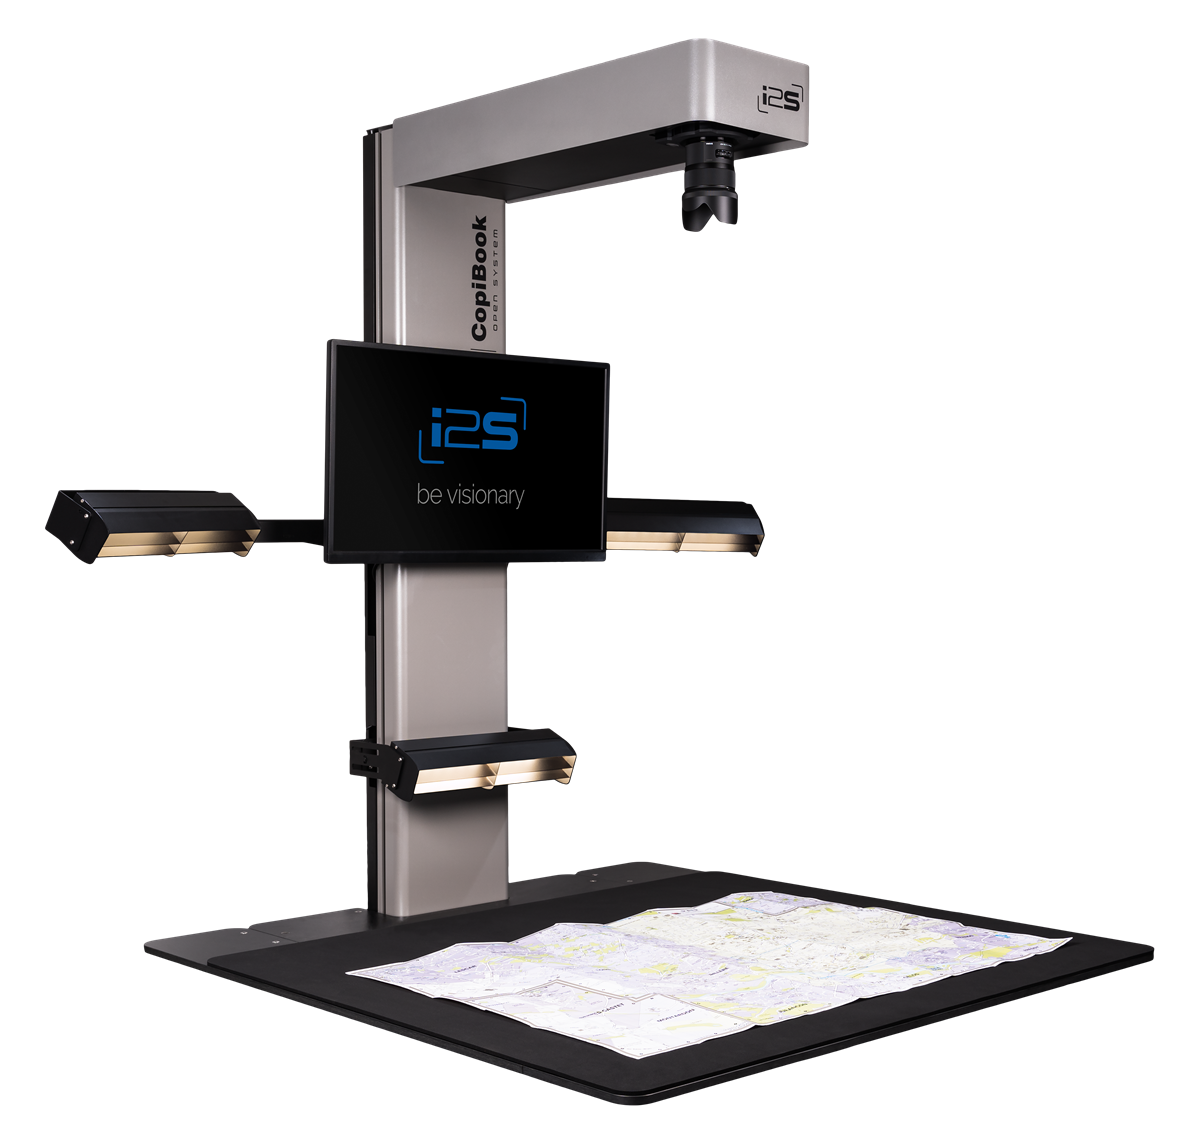 Knižní skener i2S CopiBook nabízí po odejmutí knižní kolébky formát převyšující A1. Vhodné pro ploché předlohy, např. mapy, noviny, plakáty či stavební a výkresovou dokumentaci.